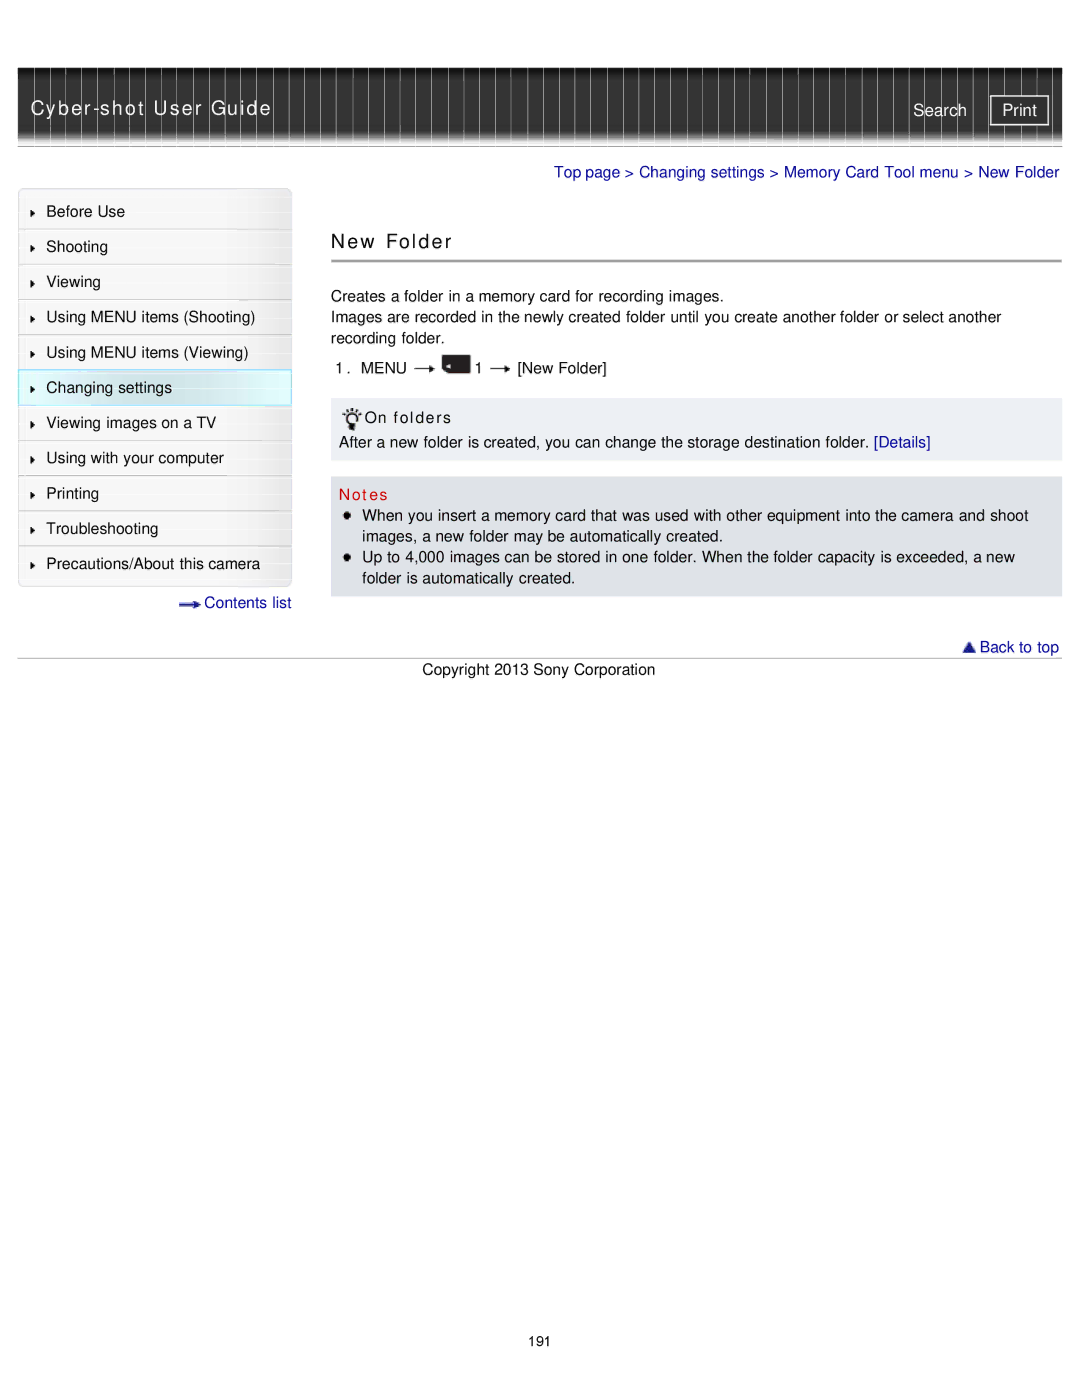 Sony DSC-RX1/RX1R manual New Folder, On folders 